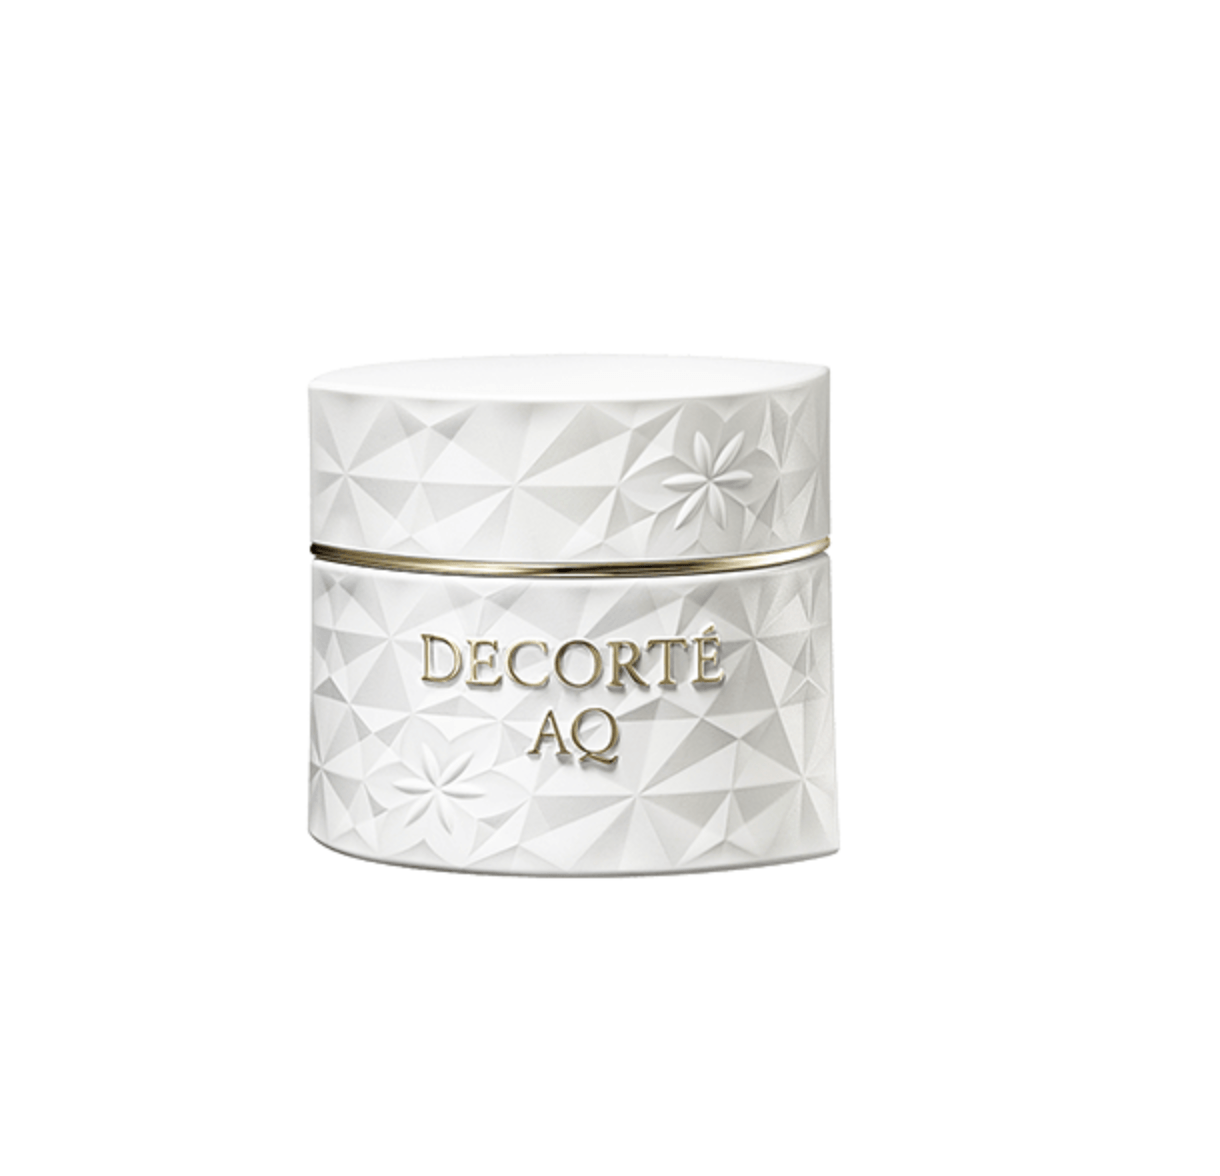 Decorte AQ Day Cream - Ichiban Mart